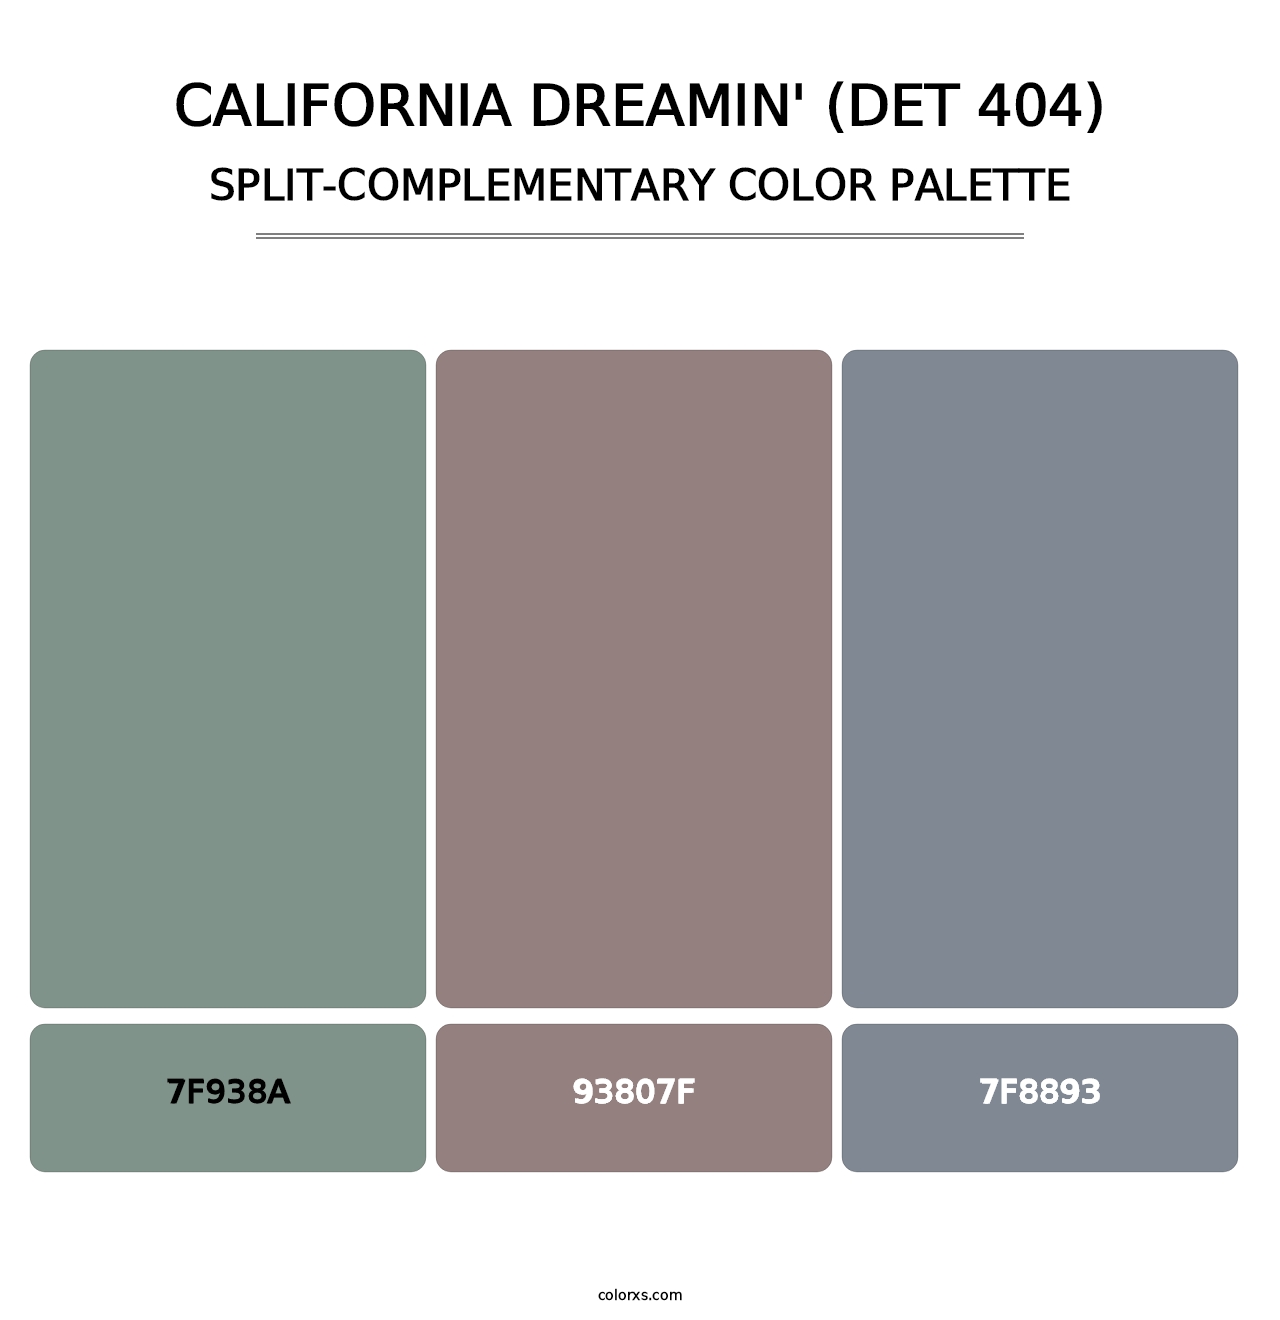 California Dreamin' (DET 404) - Split-Complementary Color Palette